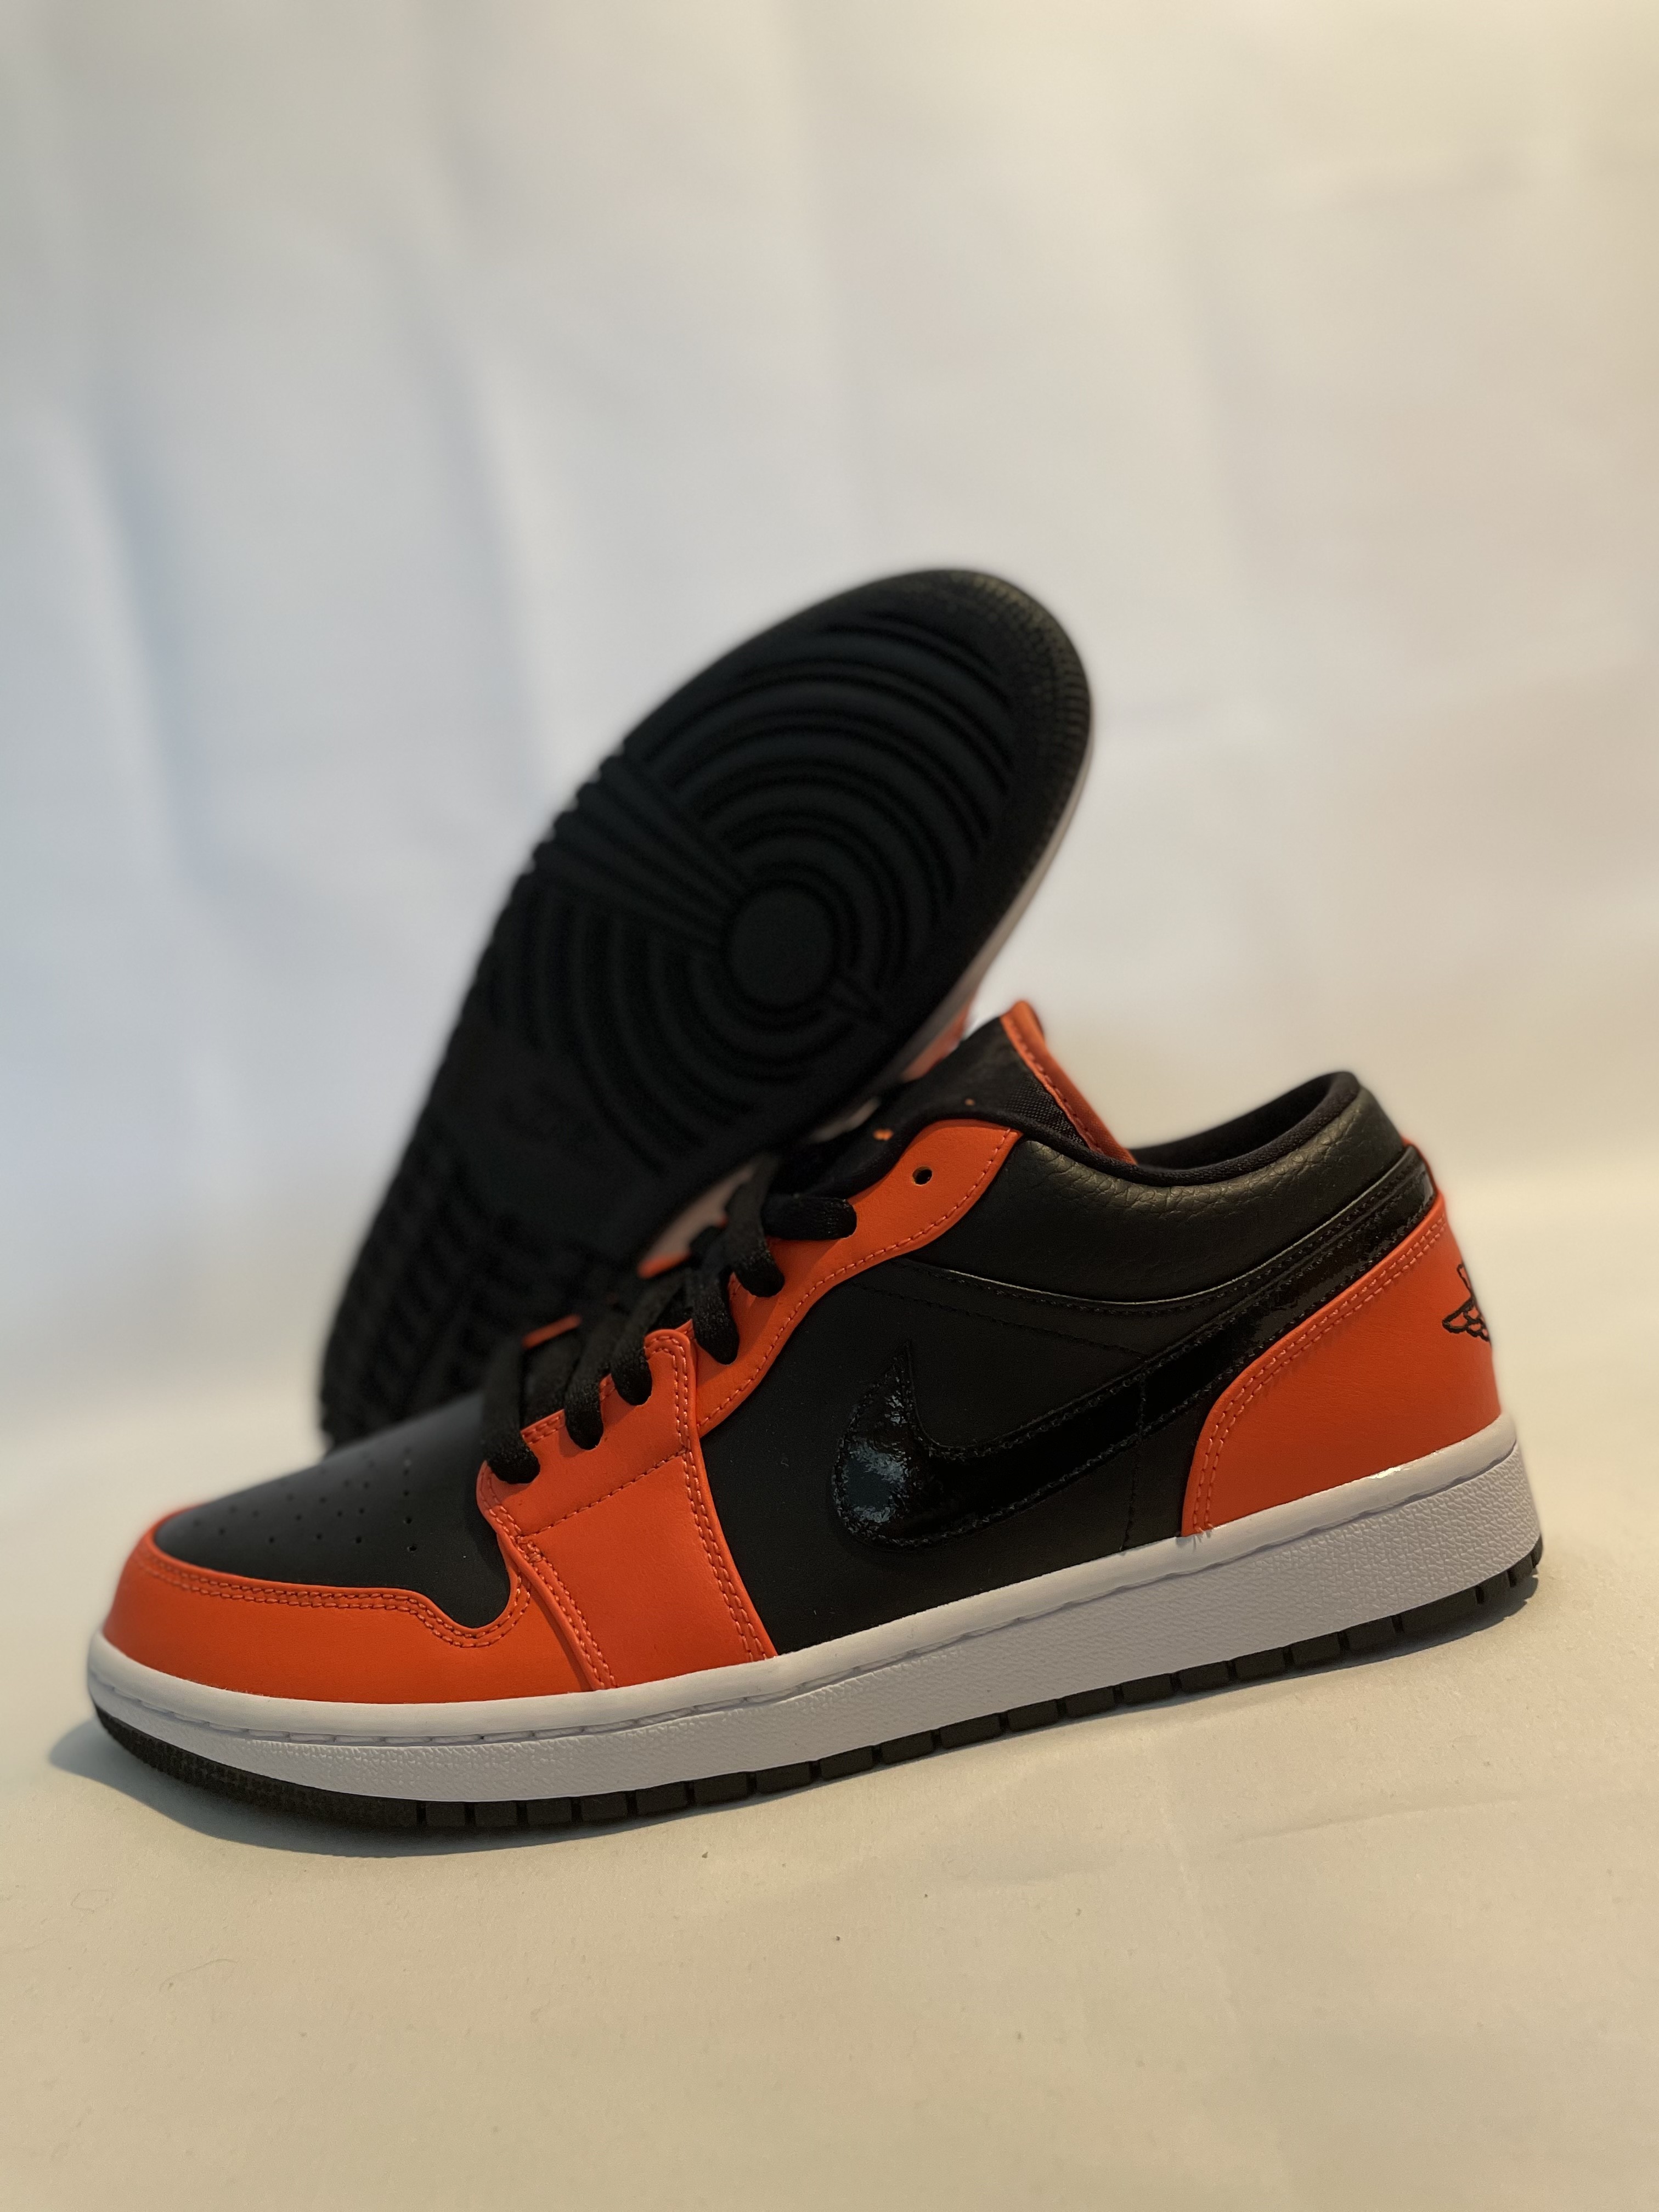 Jordan 1 low se ‘black orange turf’ - 3